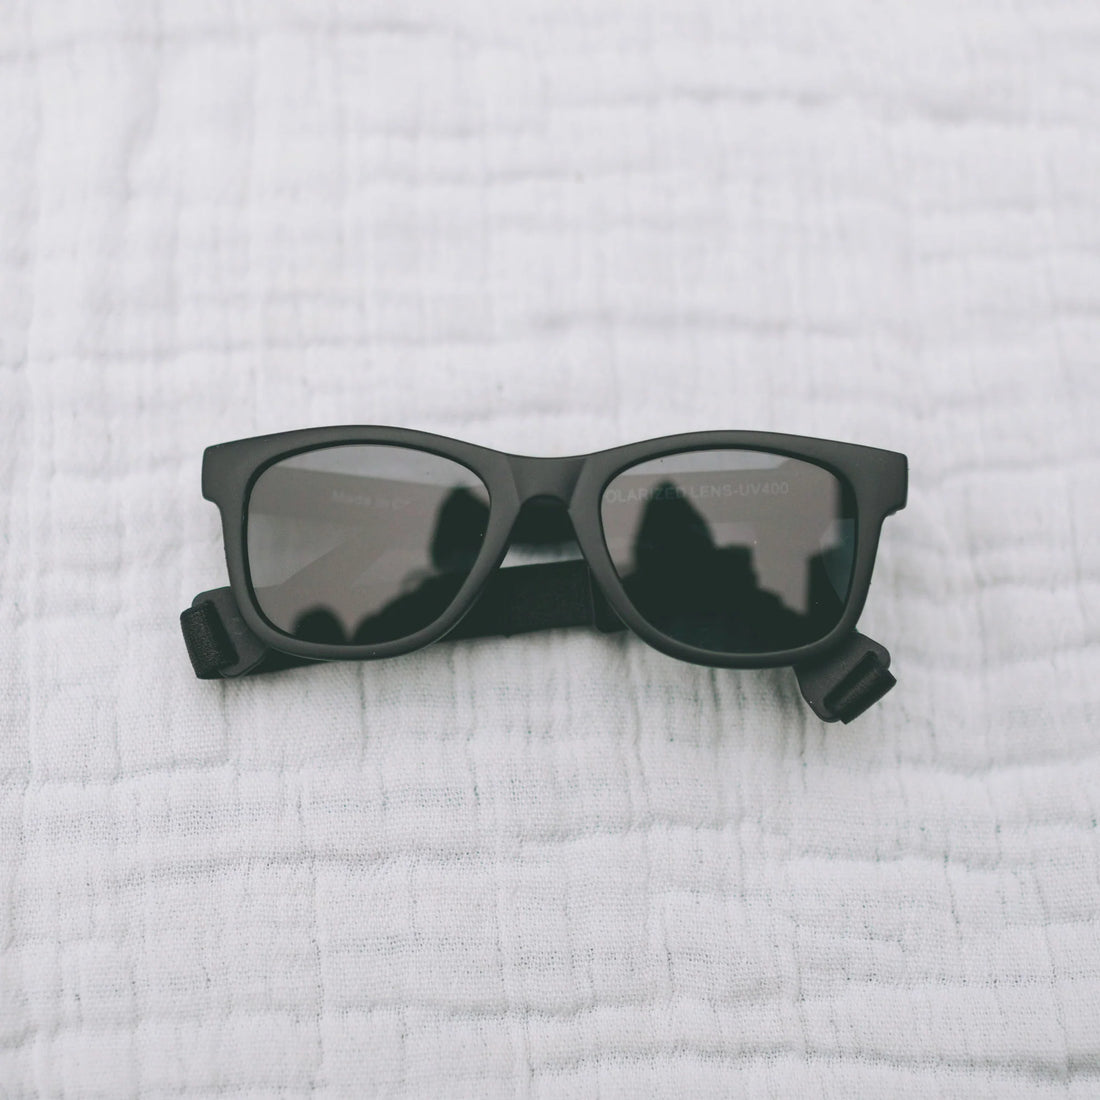 Honeysuckle Swim Co - Sunglasses (Classic Black) 6-36M